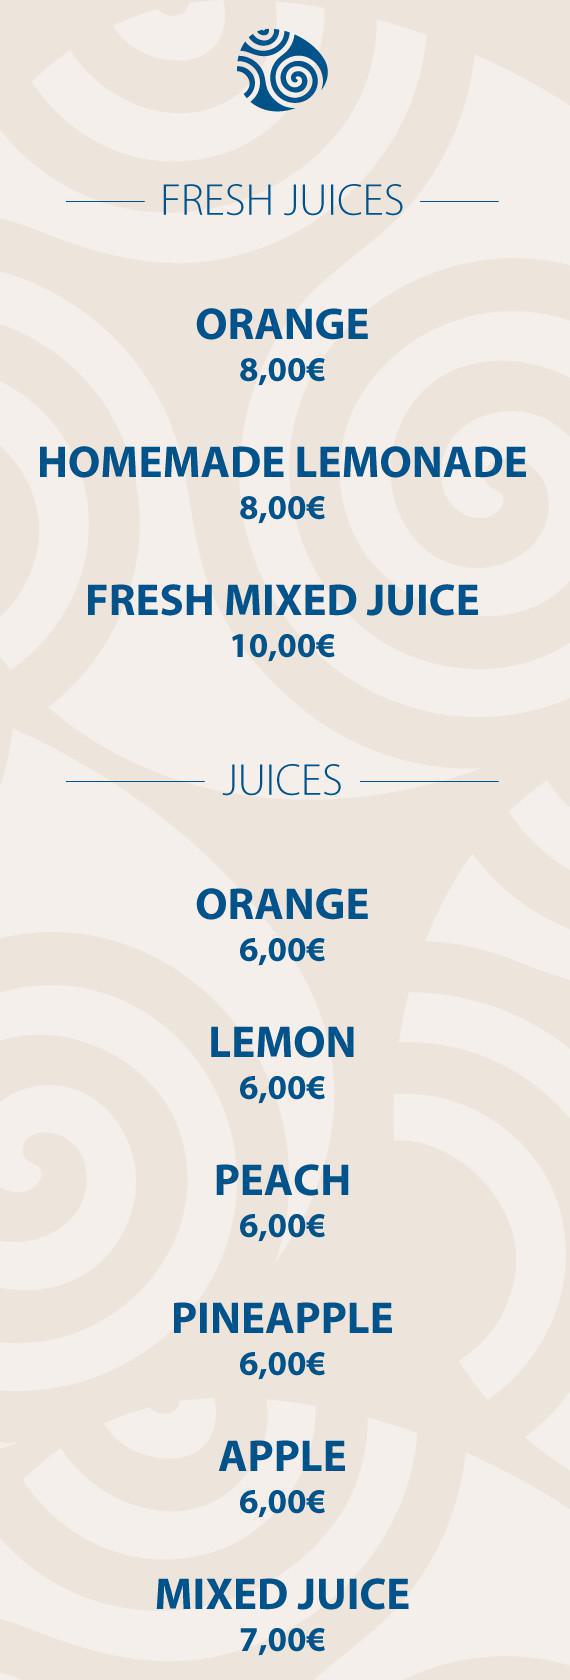 Fresh Juices & Juices